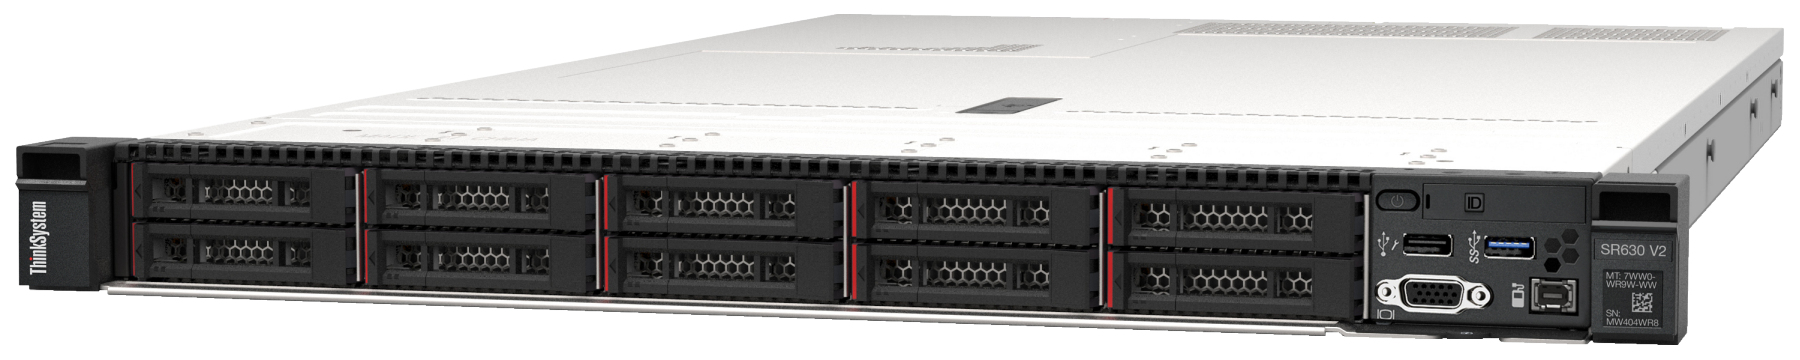 Сервер Lenovo ThinkSystem SR630 V2 (7Z71A05BEA). Фиксированная комплектация сервера